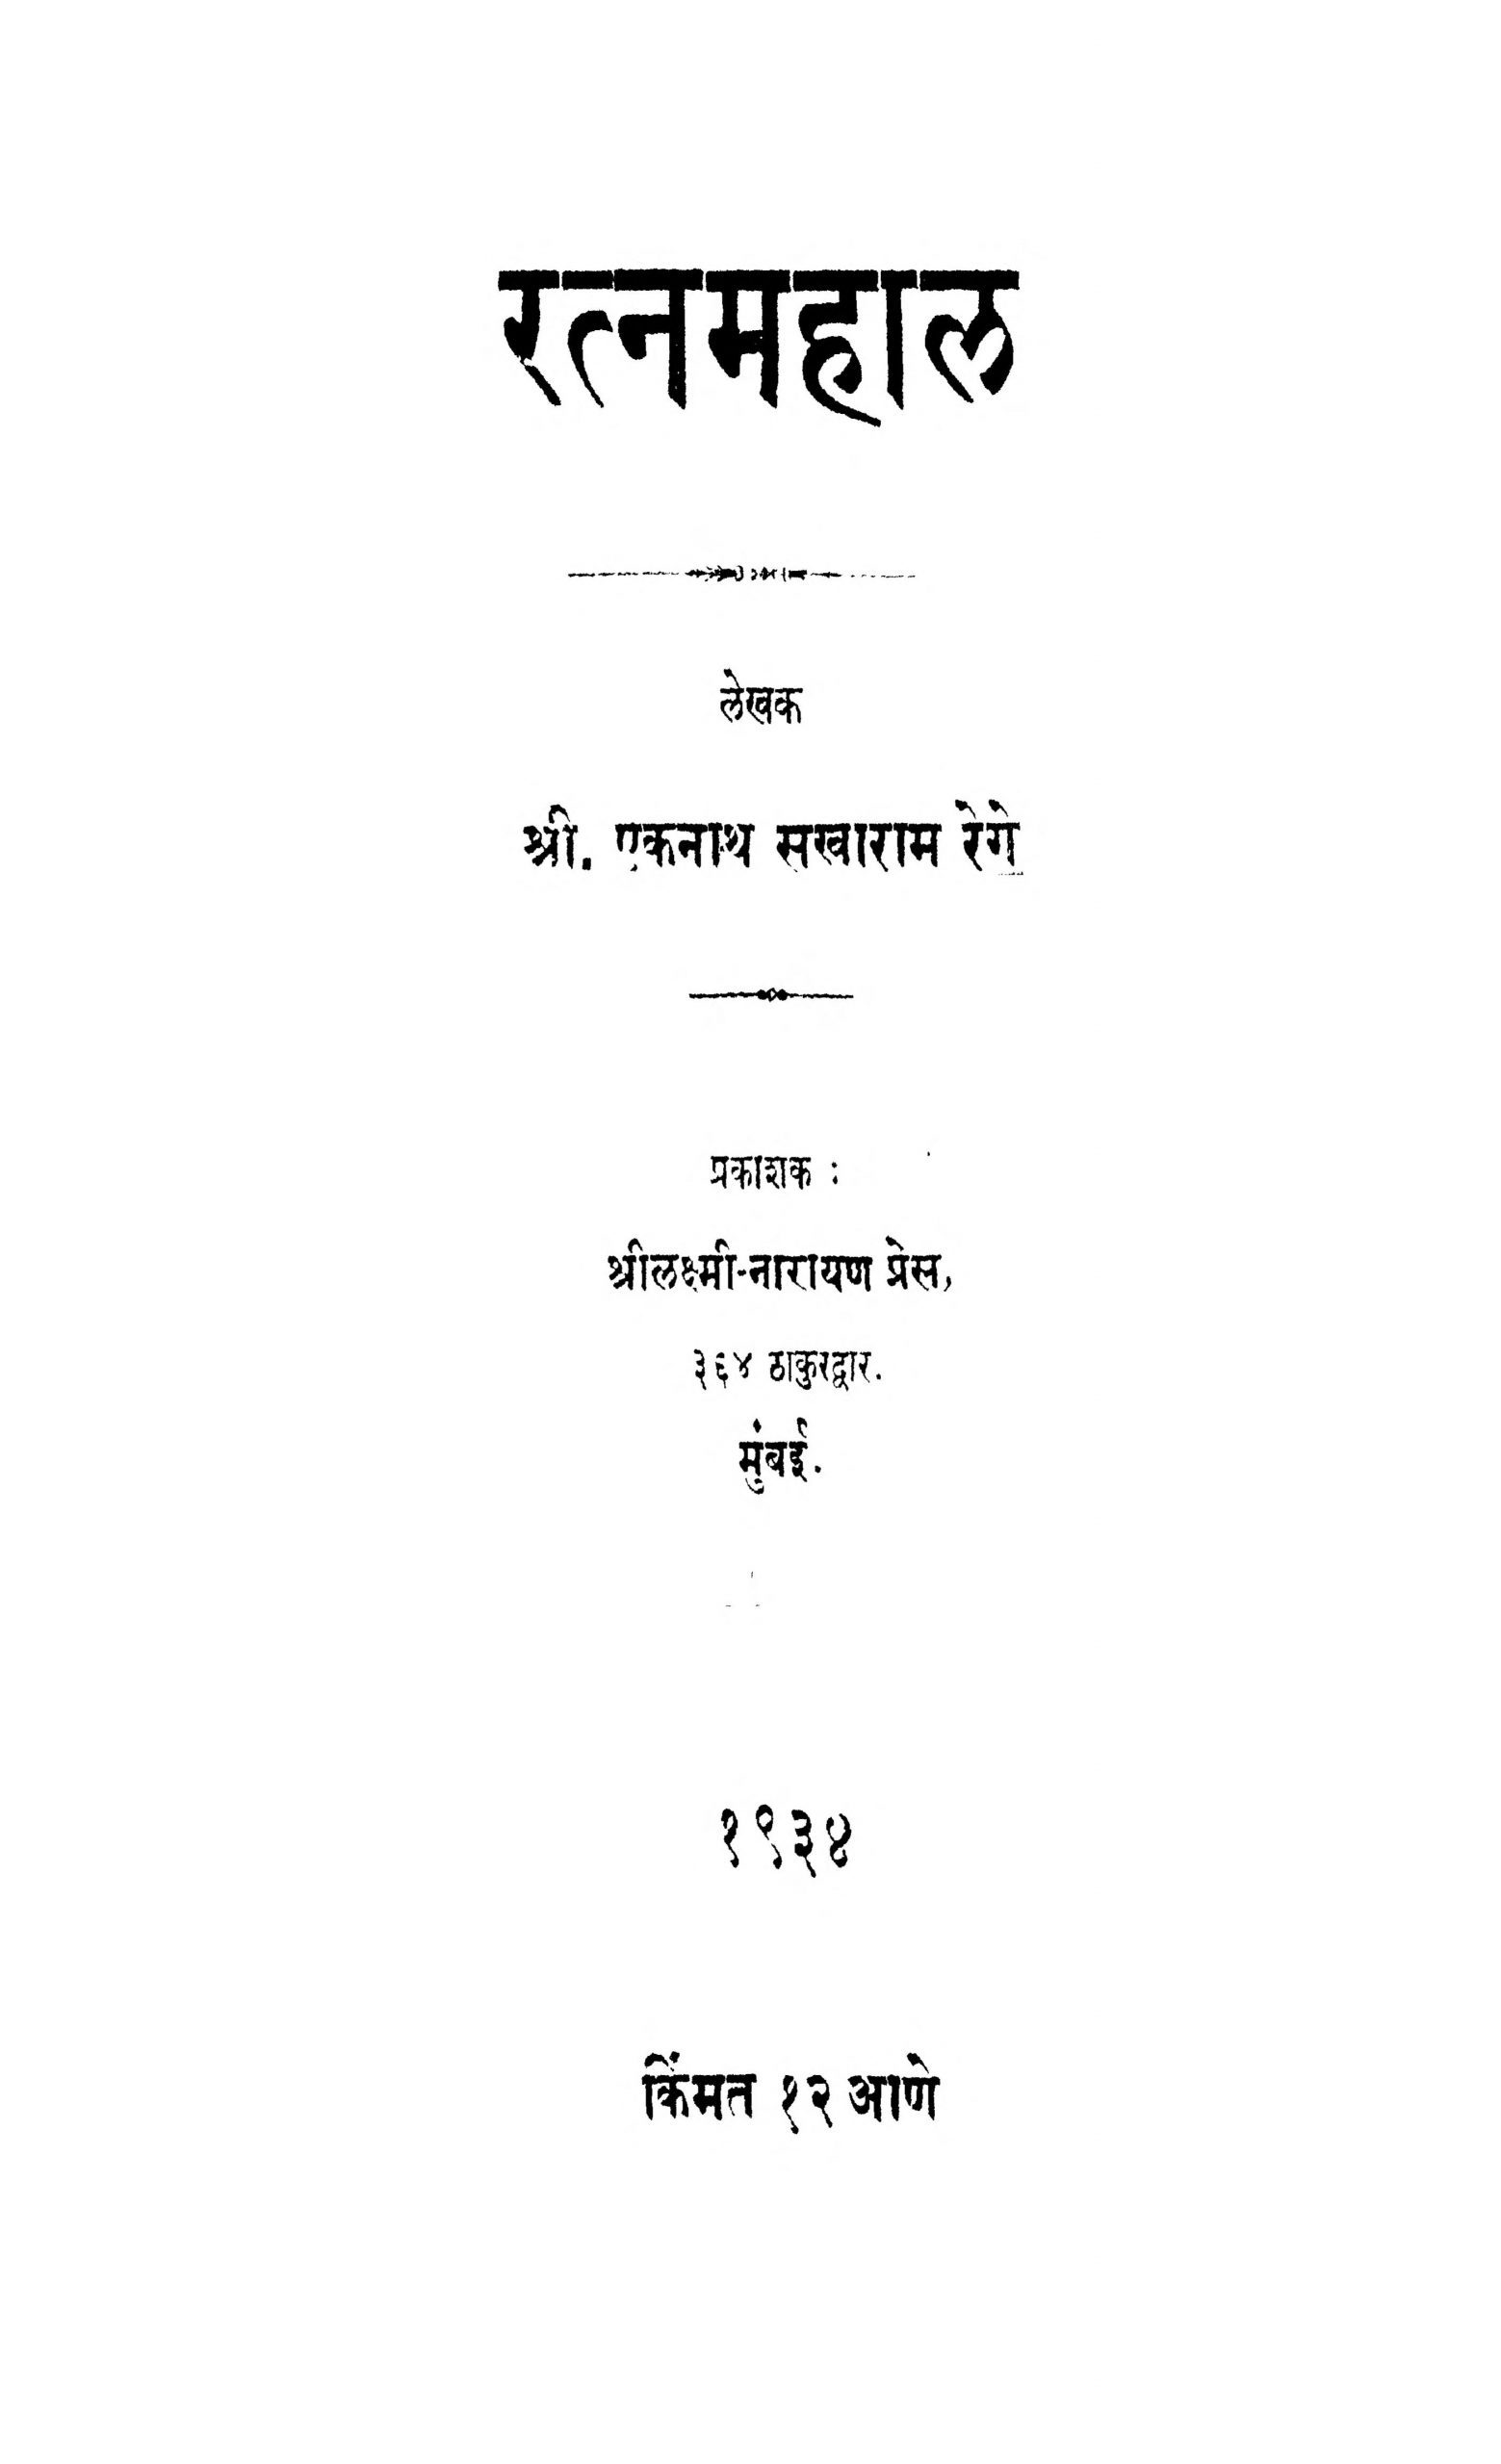 Ratna Mahal Eknath Sakharam Reggae Marathi PDF Book